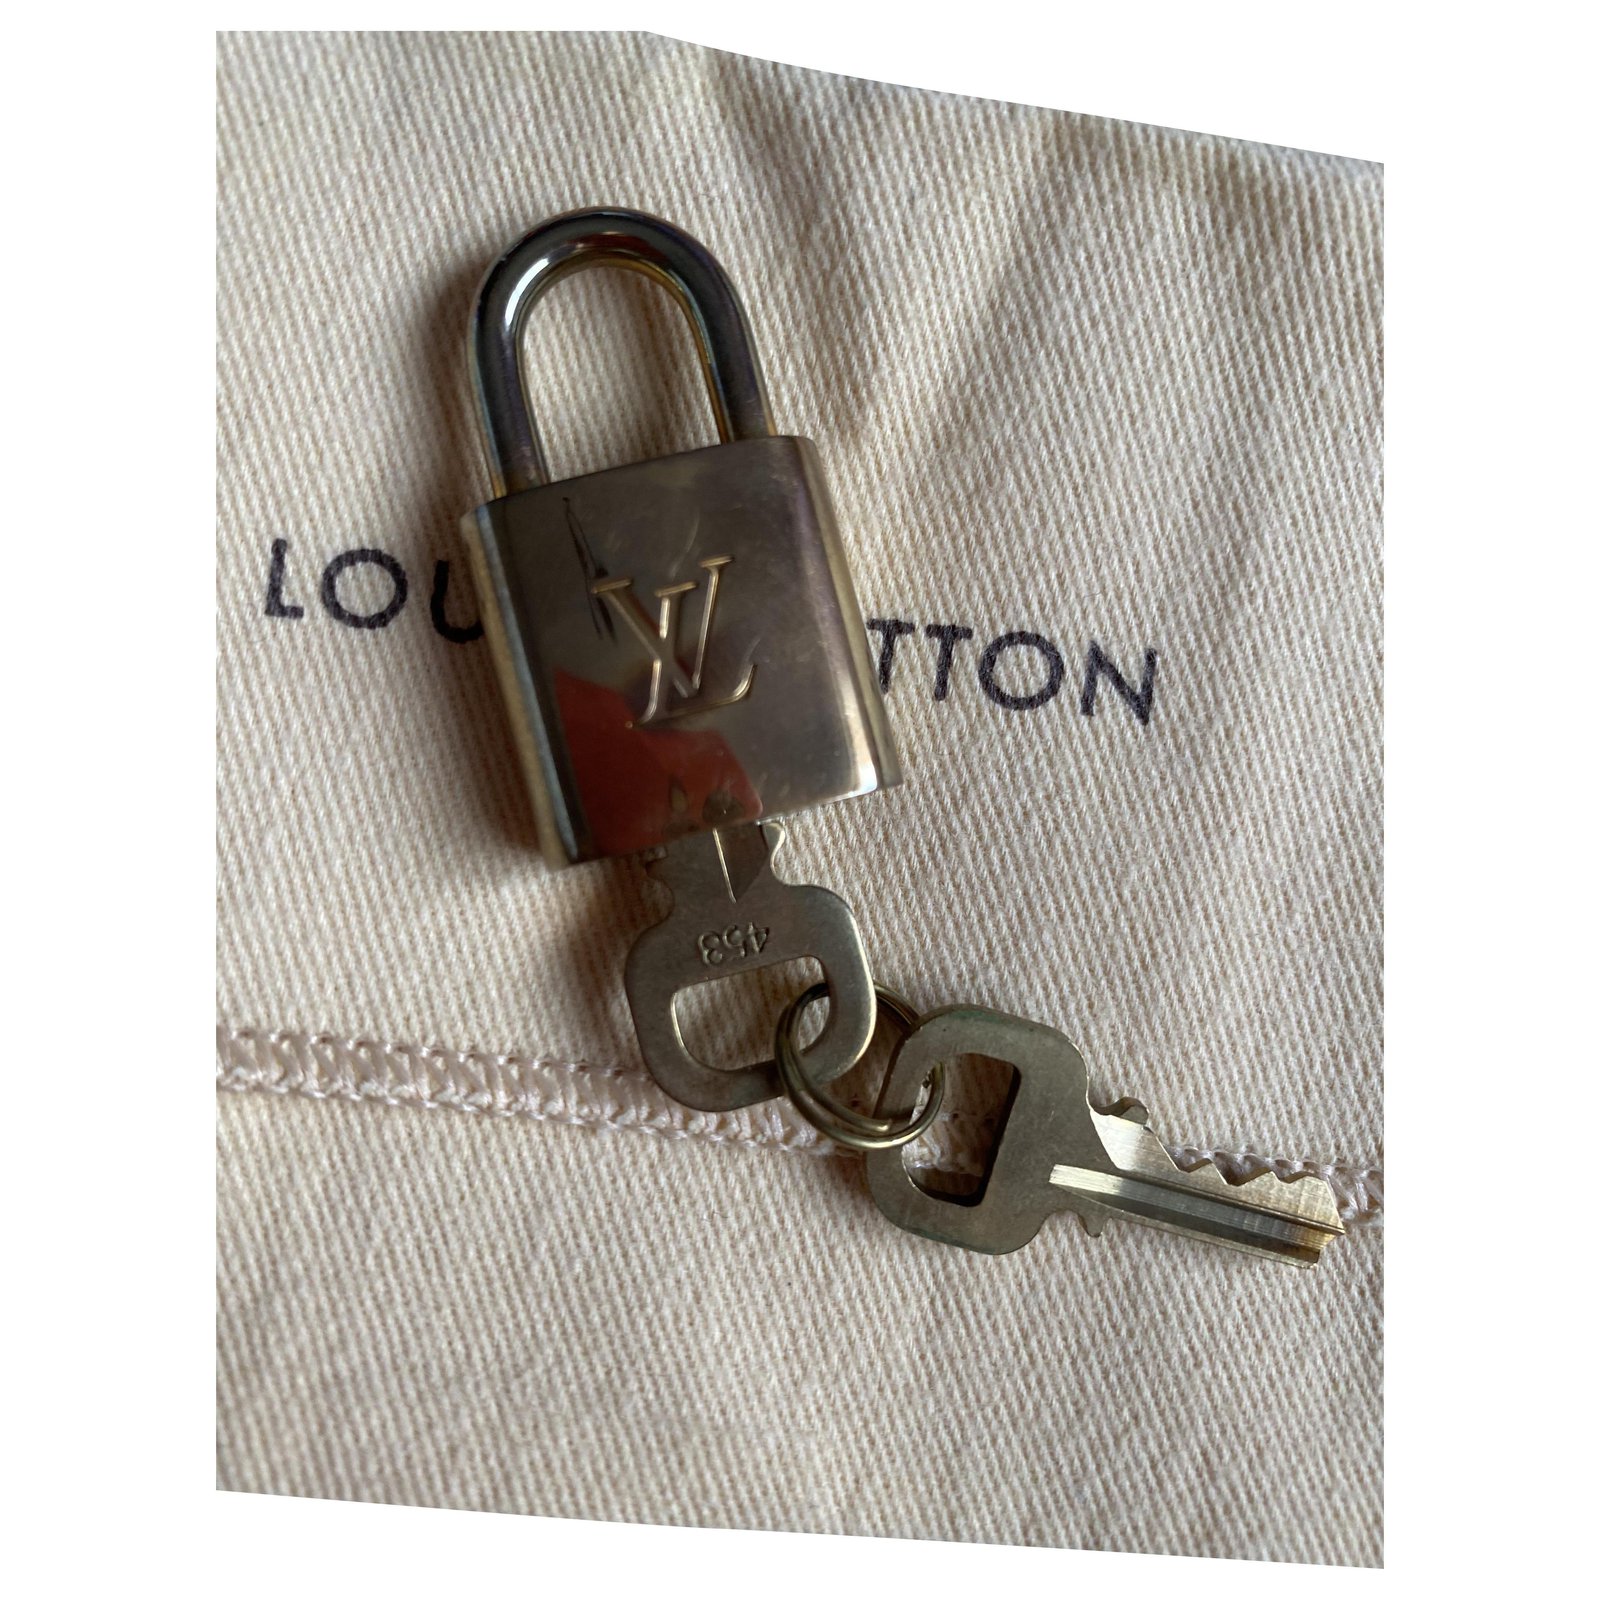 Louis Vuitton LV Padlock Key Holder Gold Silver Metal